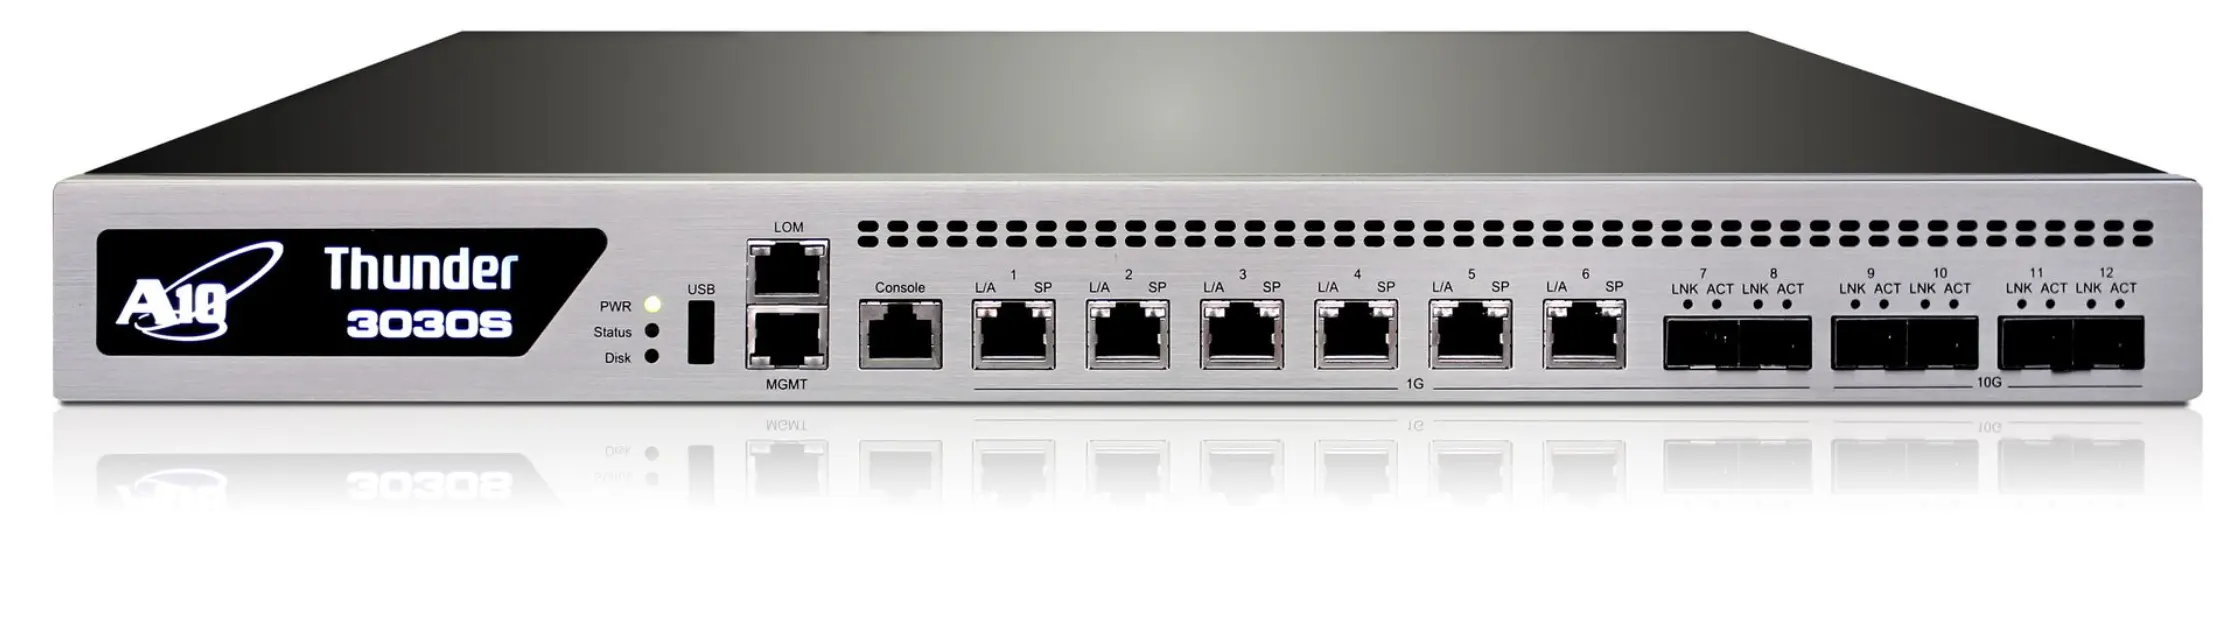 A10 reti tuonano 3030S TH3030 Gateway del servizio applicativo unificato con CGN lic